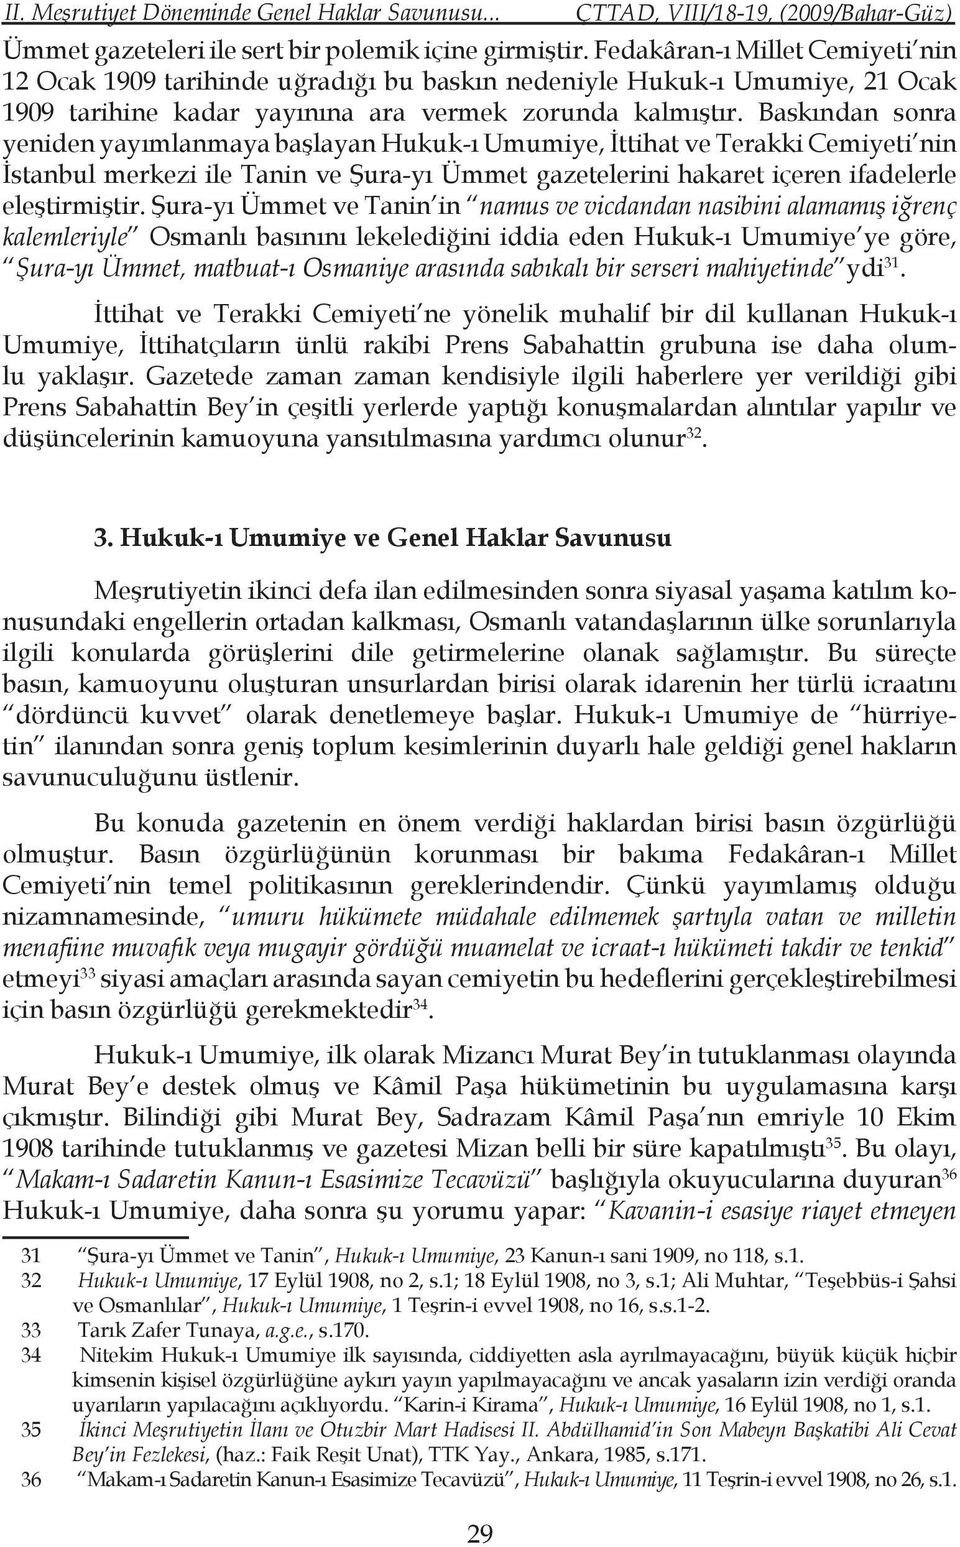 Baskından sonra yeniden yayımlanmaya başlayan Hukuk-ı Umumiye, İttihat ve Terakki Cemiyeti nin İstanbul merkezi ile Tanin ve Şura-yı Ümmet gazetelerini hakaret içeren ifadelerle eleştirmiştir.